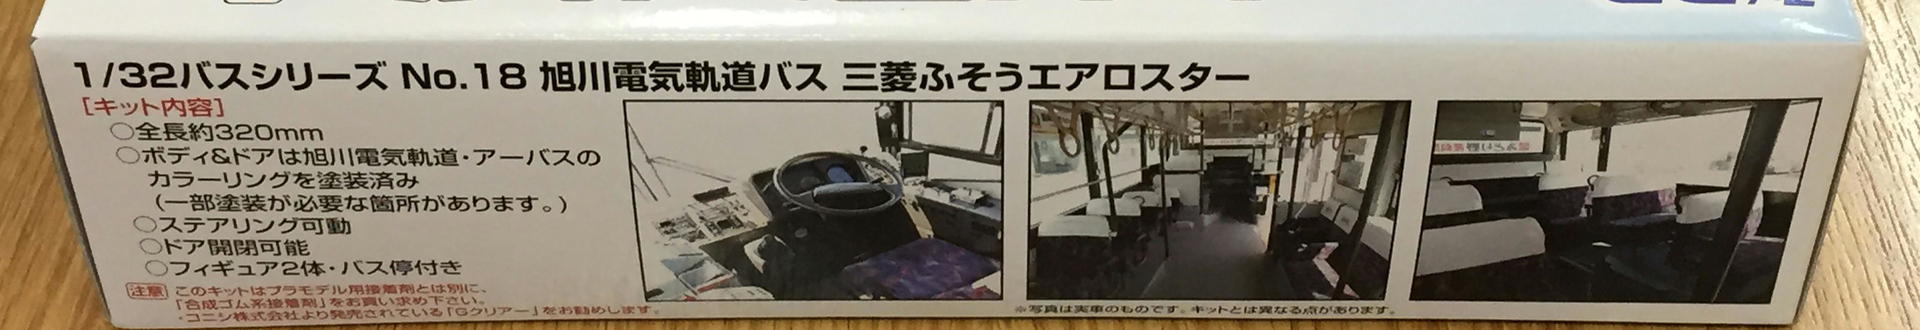 ちょっとデカい？ミニカーバス 1/32旭川電気軌道バス製作奮闘記: 昭和